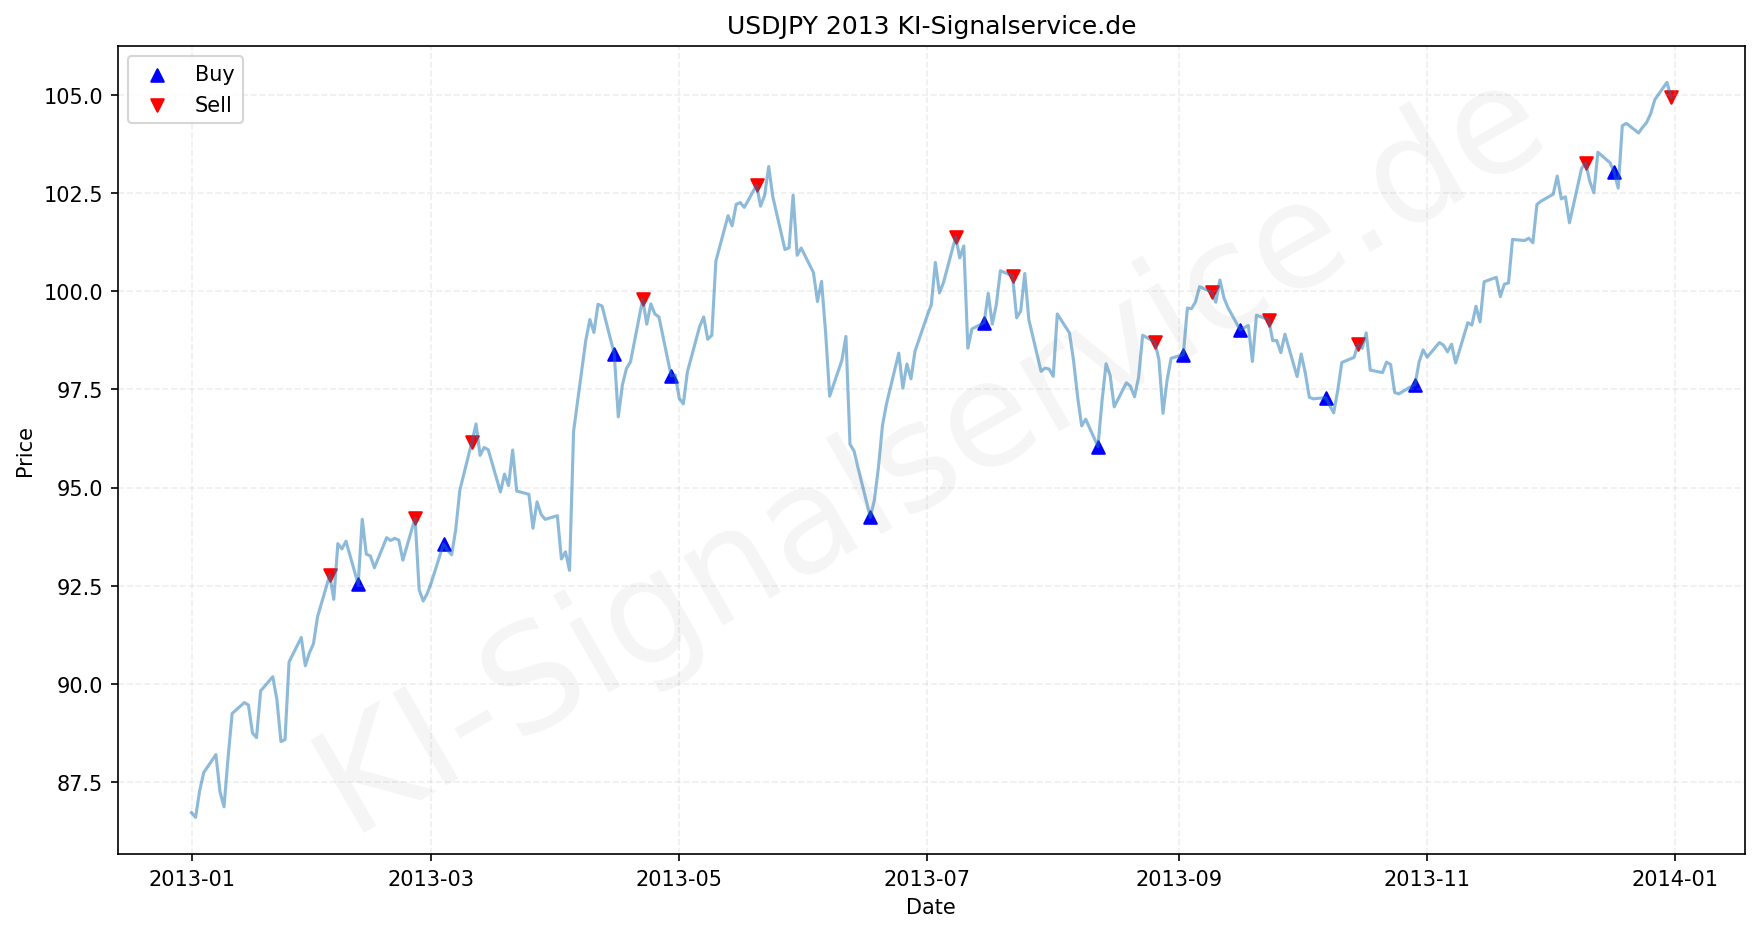 USDJPY Chart - KI Tradingsignale 2013